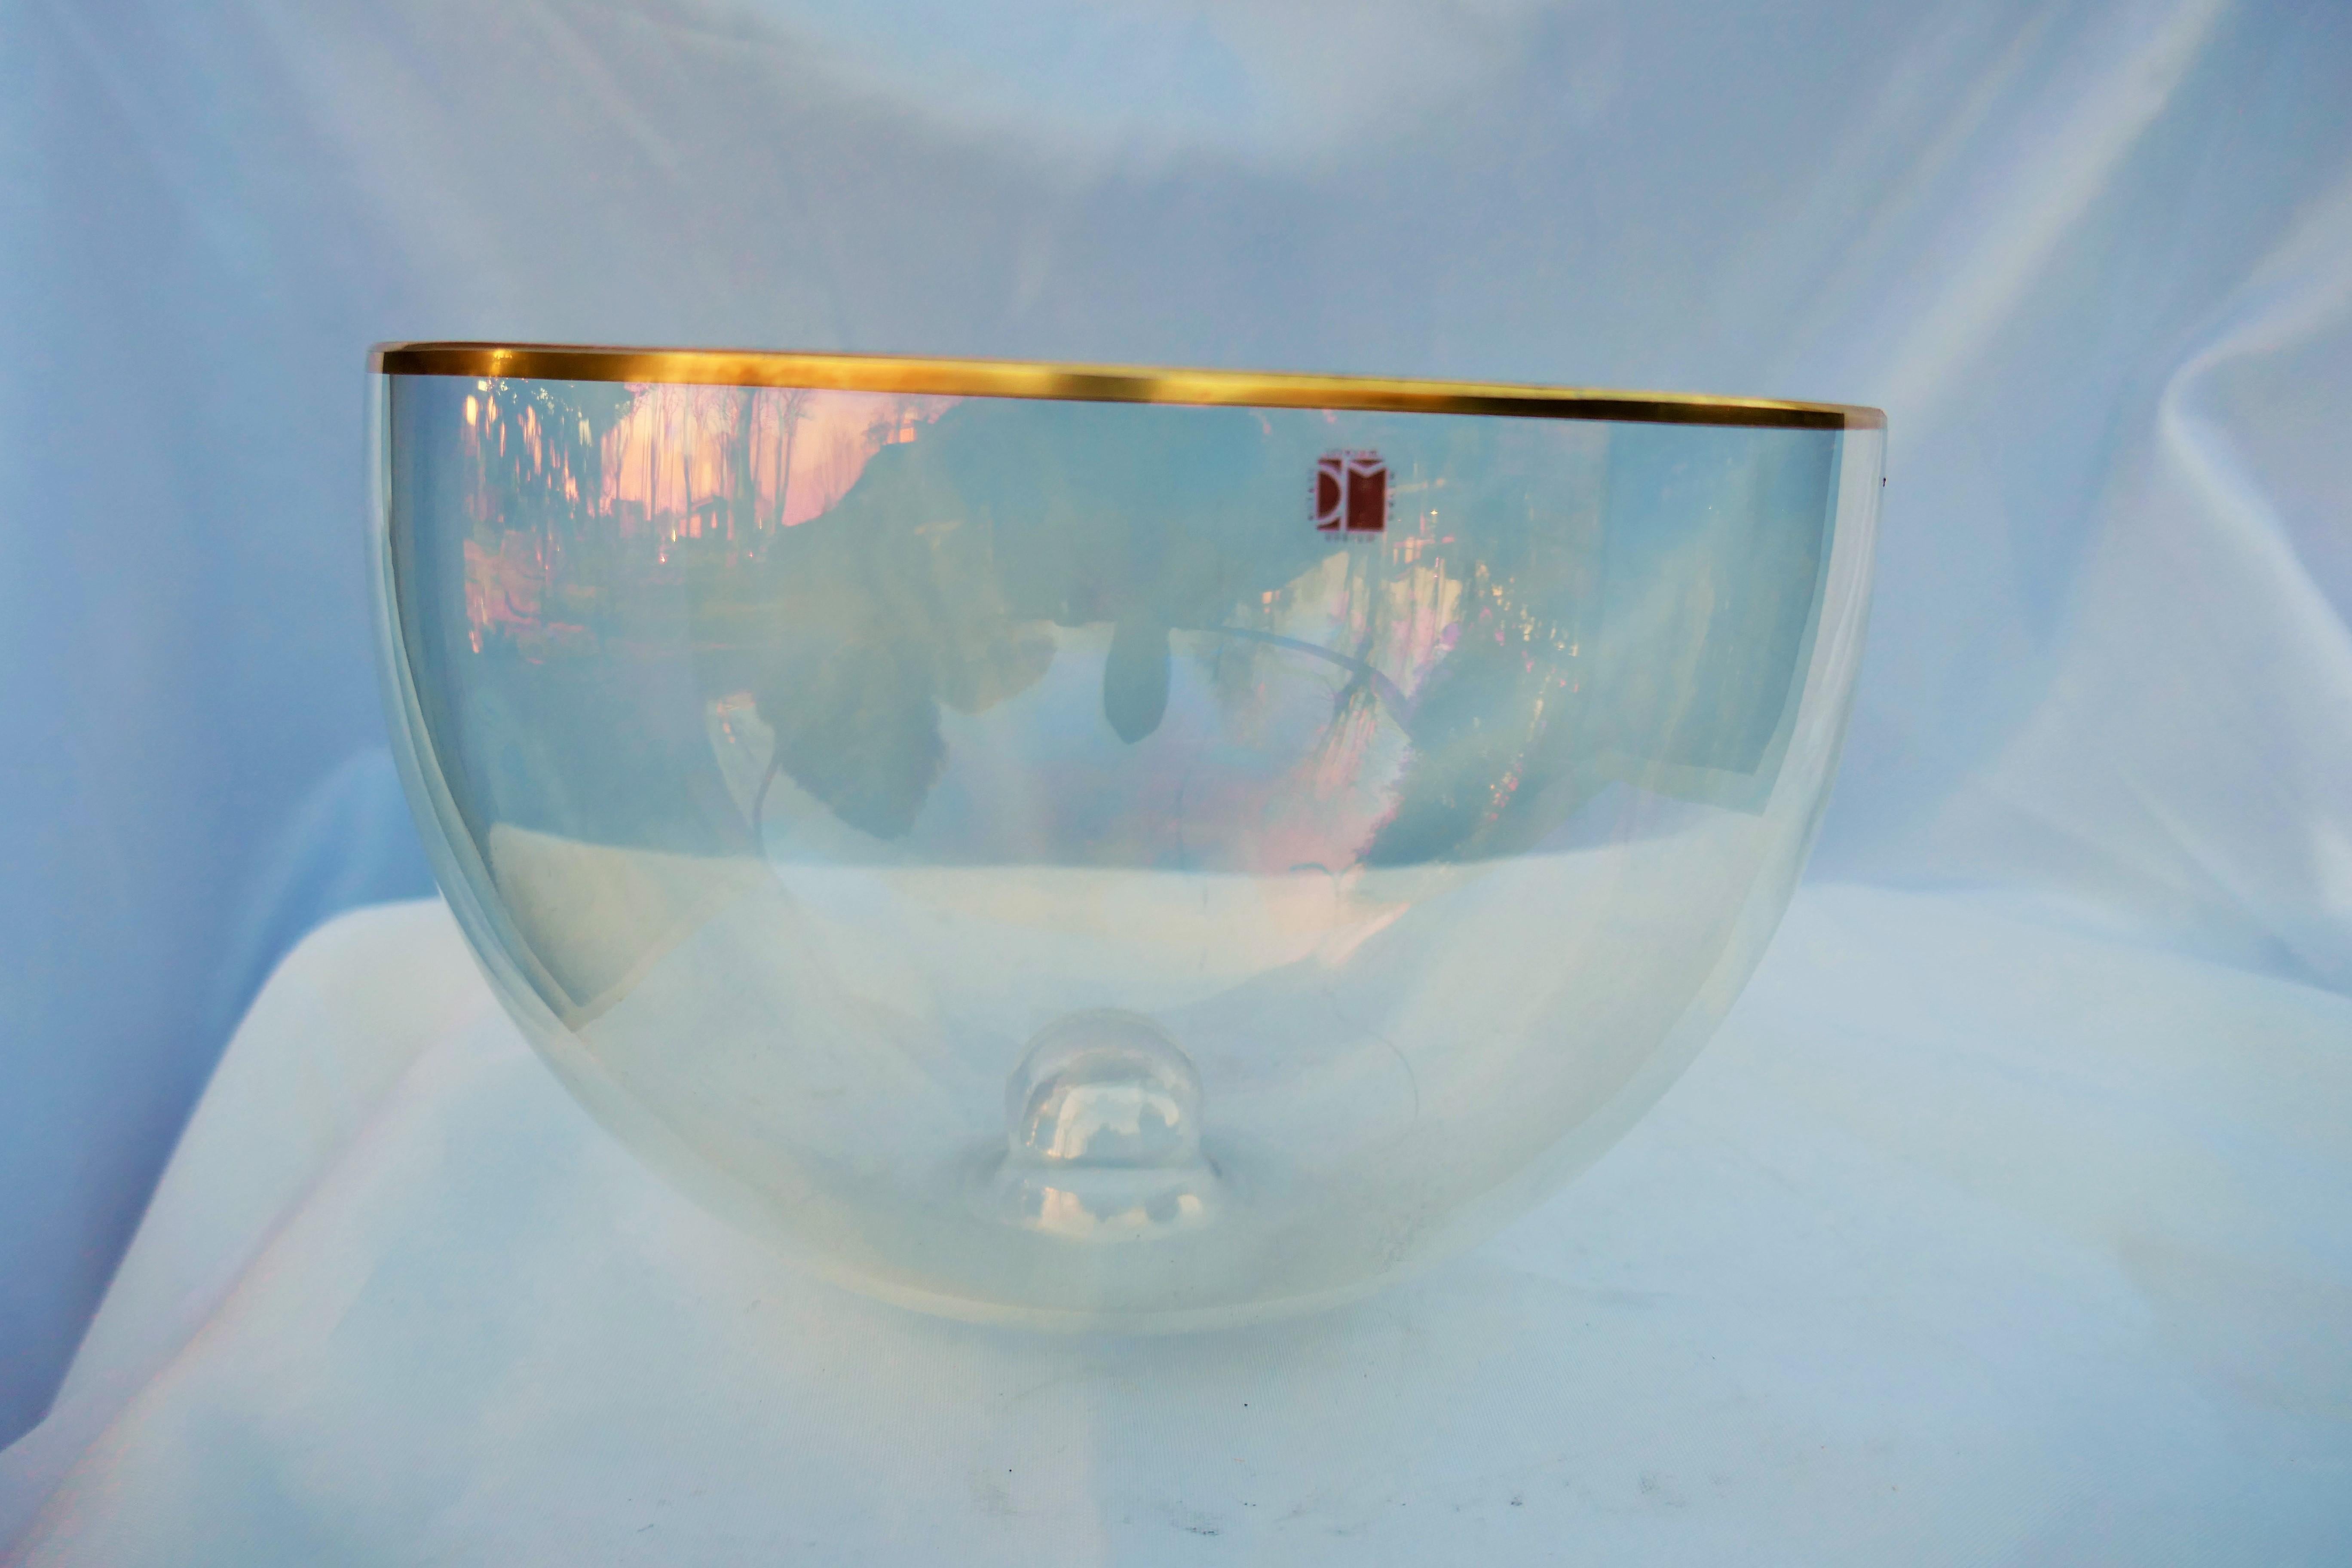 Vaso in vetro iridiscente con bordo in oro, produzione Carlo Moretti.
Buone condizioni
Grazie